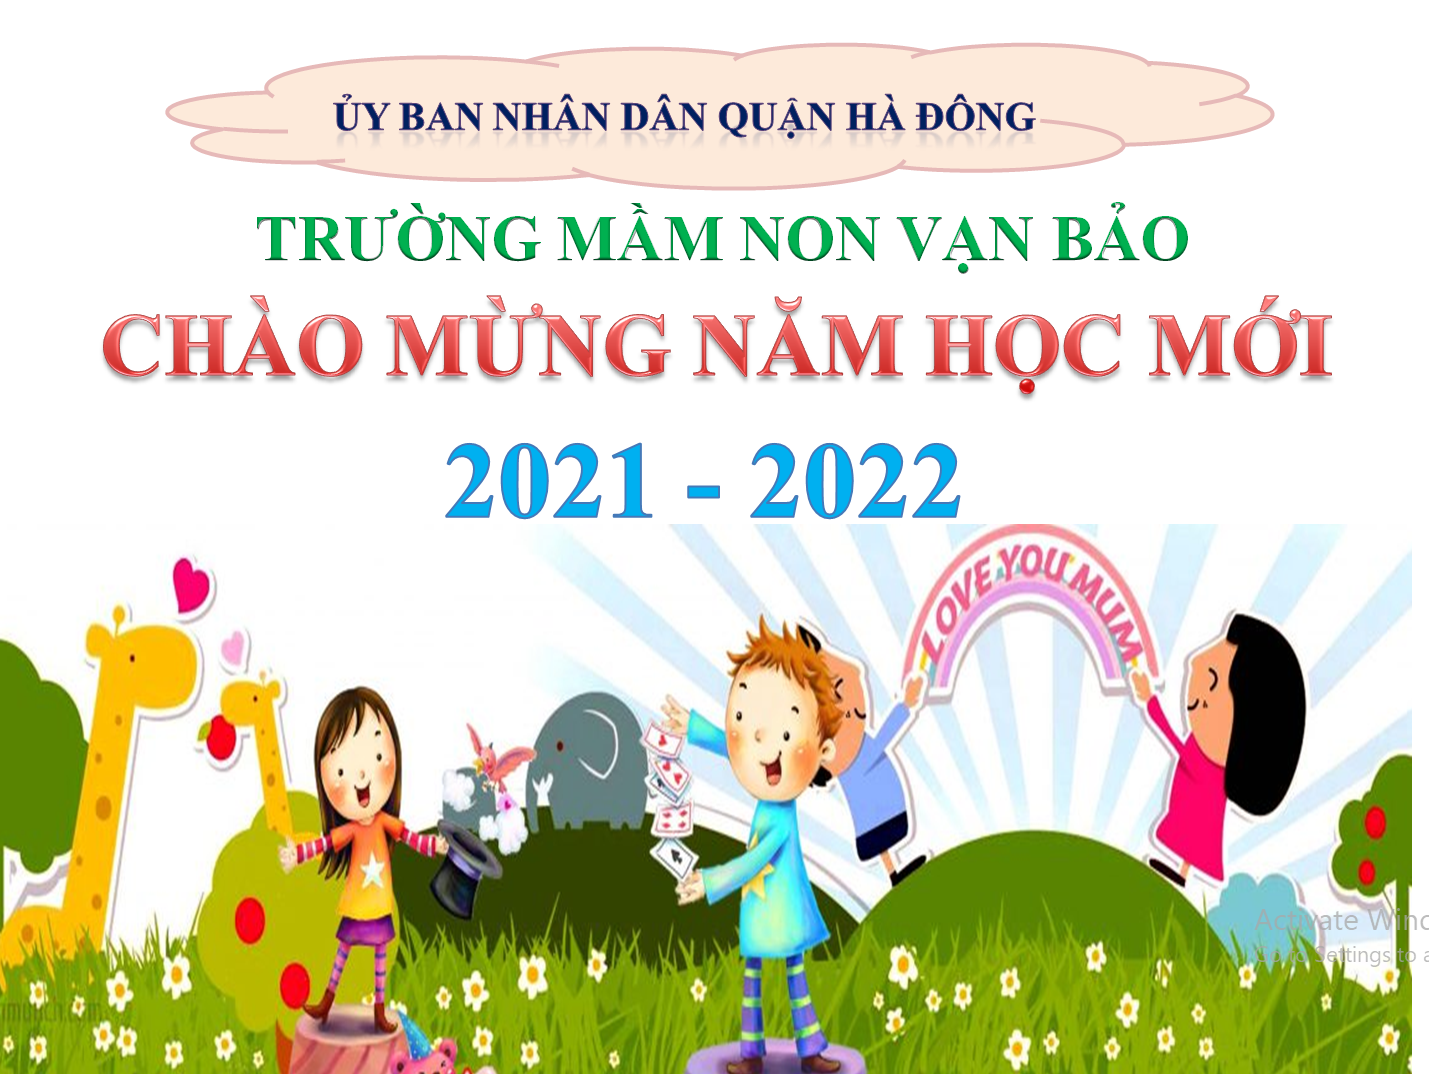 TRƯỜNG MN VẠN BẢO SẴN SÀNG CHO NĂM HỌC MỚI 2021 - 2022